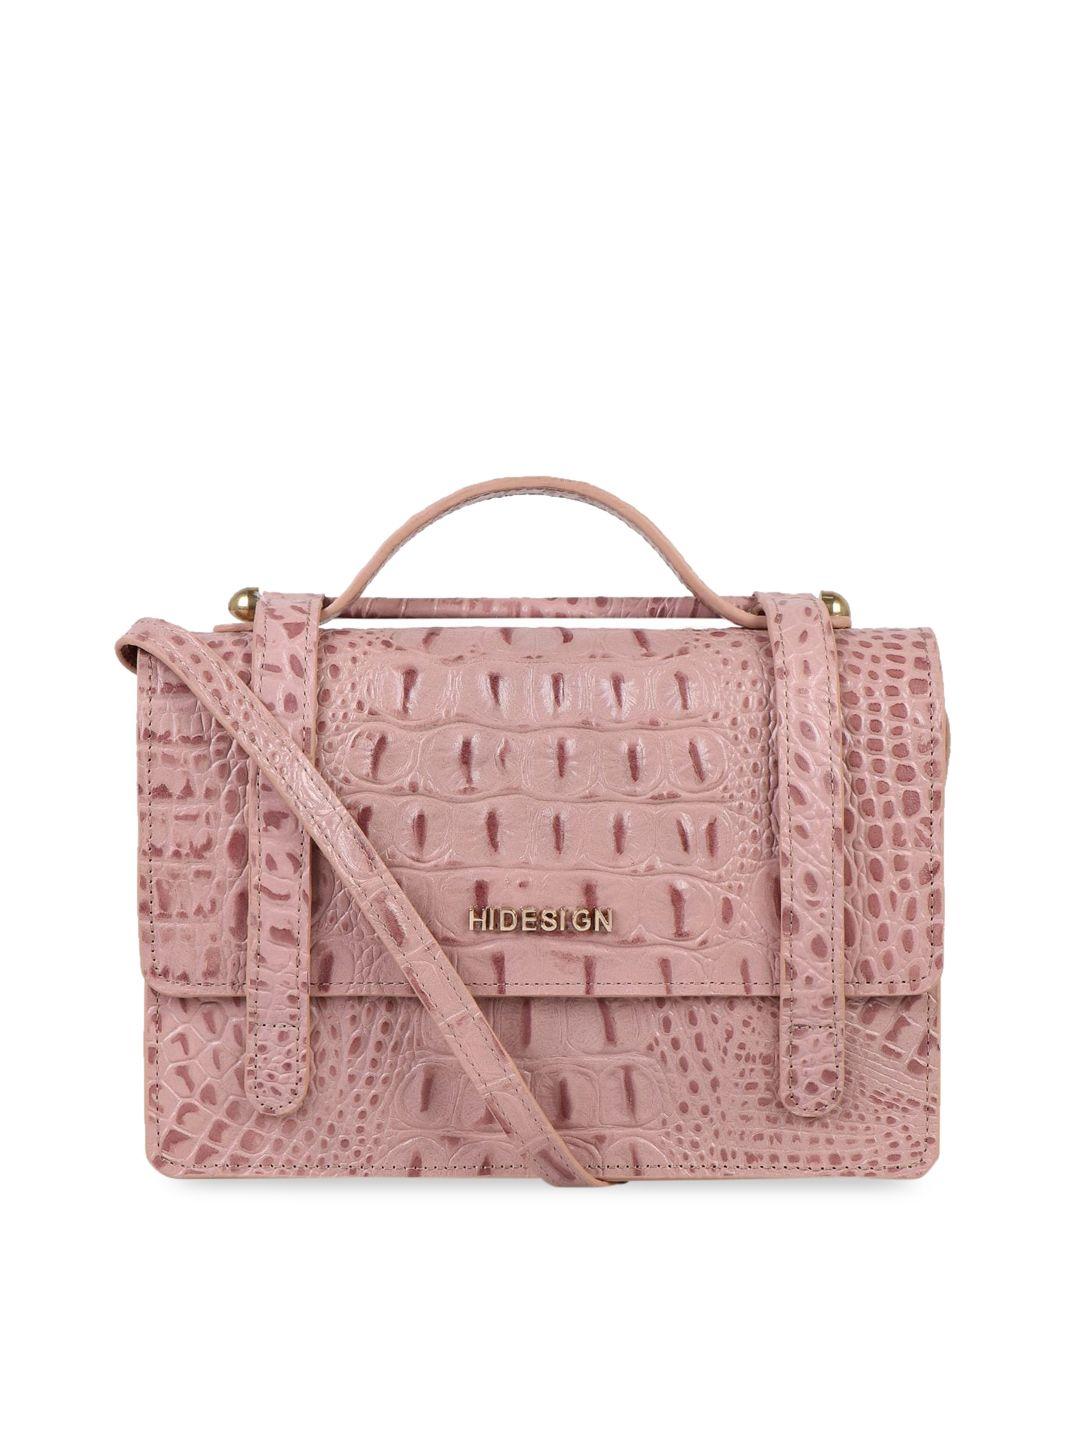 hidesign pink textured sling bag